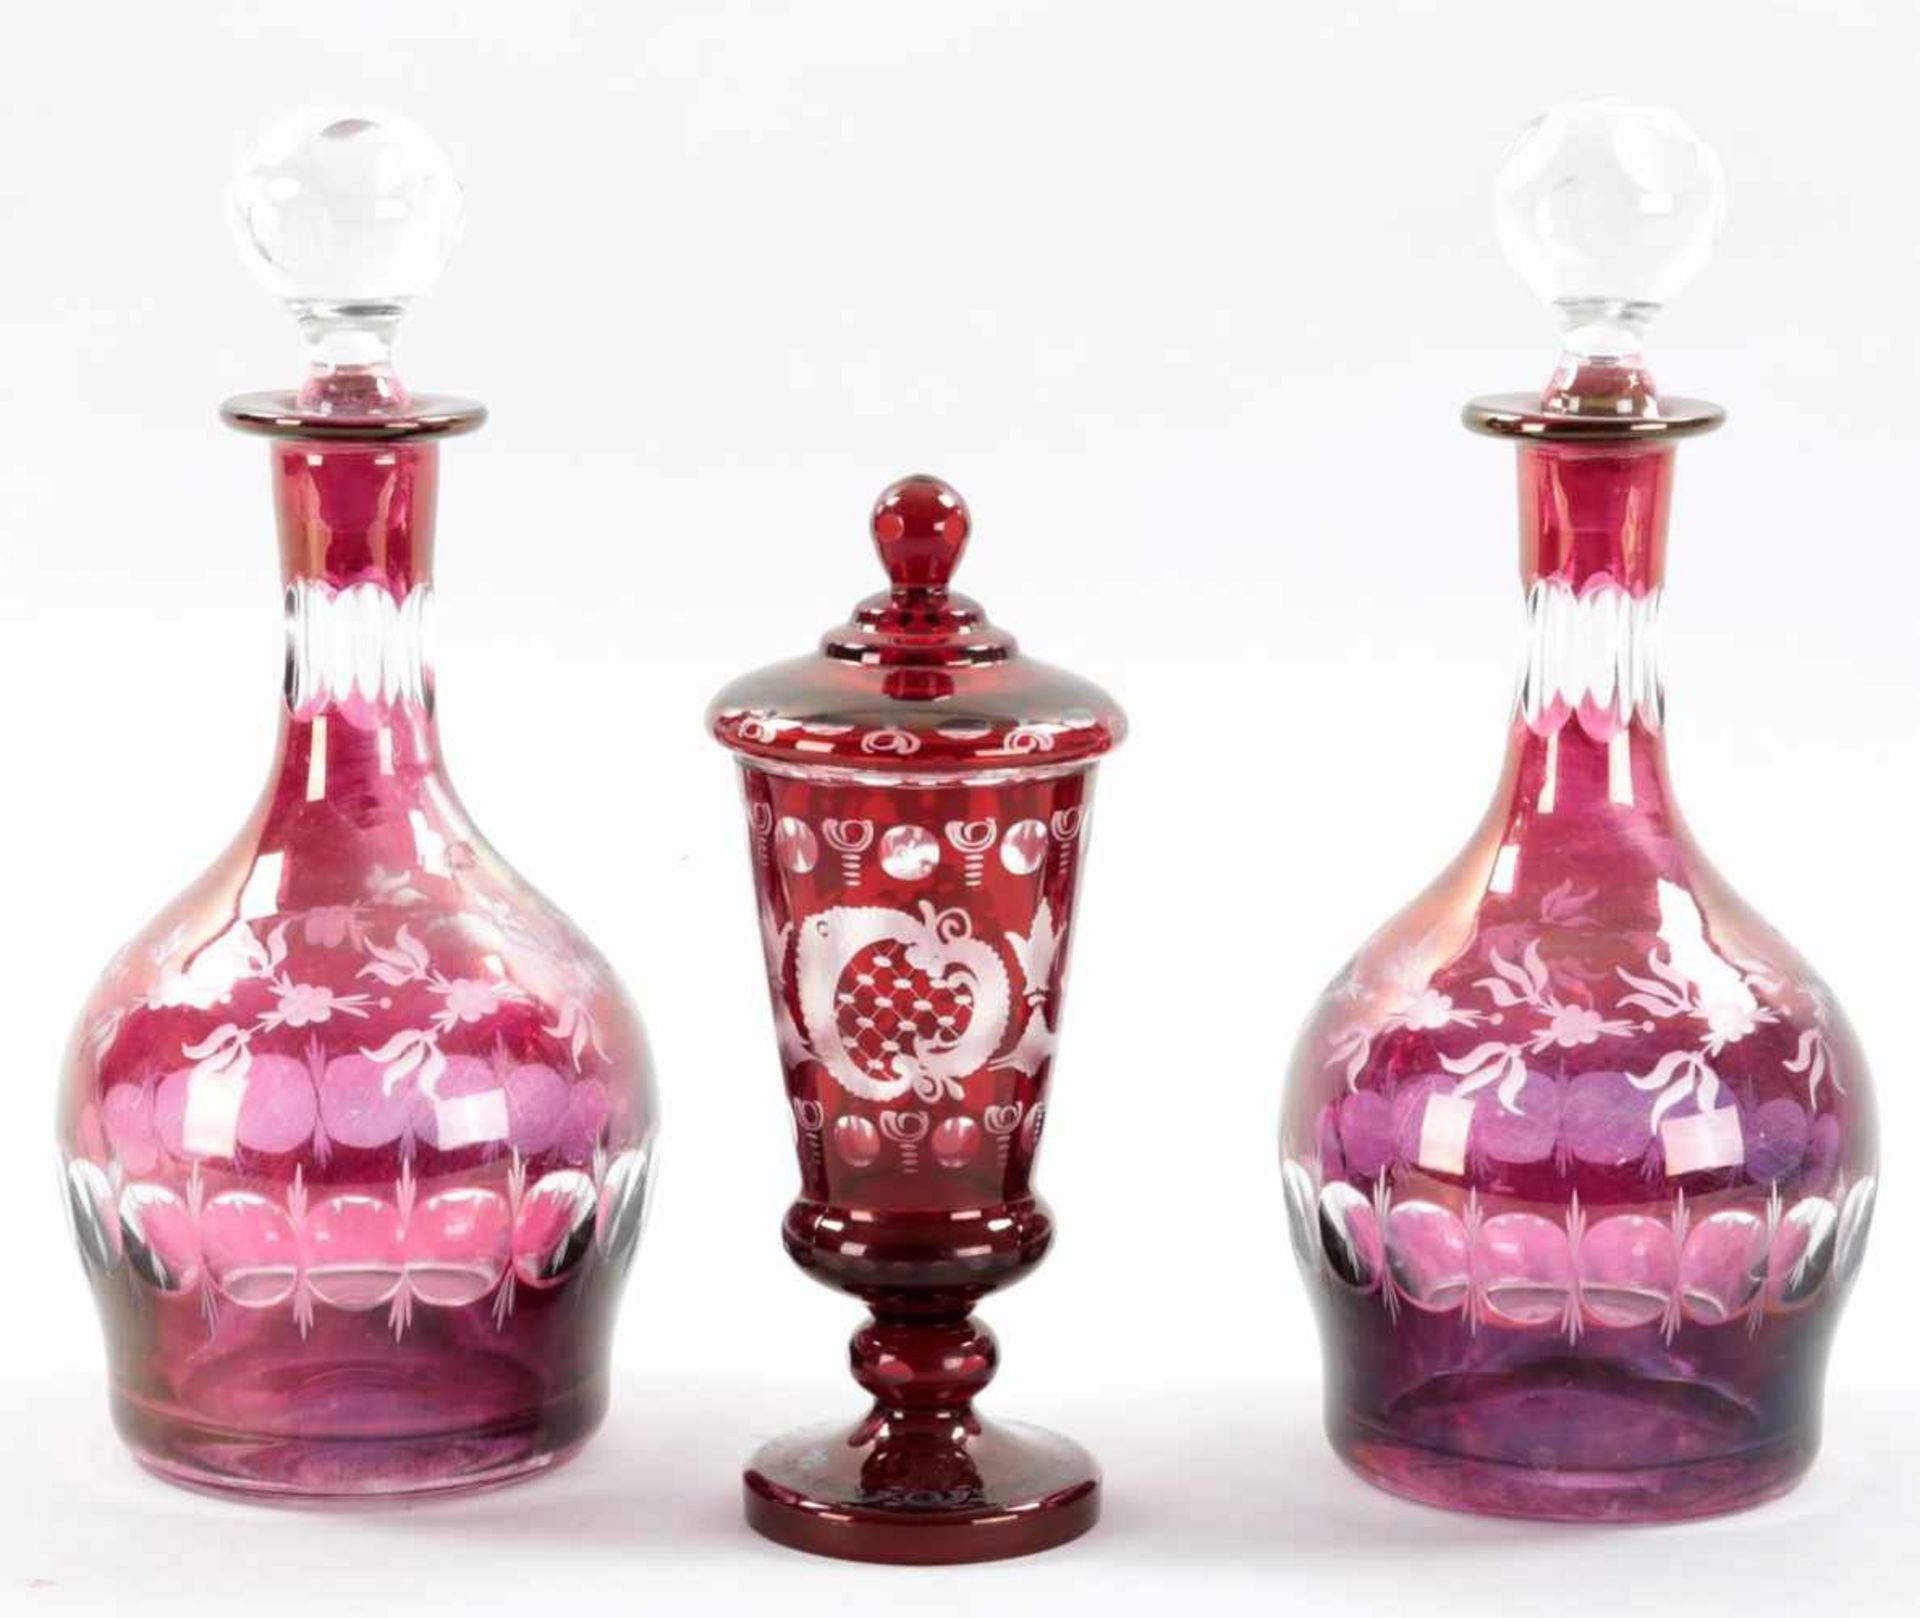 KonvolutGlas, 20.Jh. Das Deckelpokalglas sowie die beiden Karaffen in Rot bzw. Violett überfangen m.